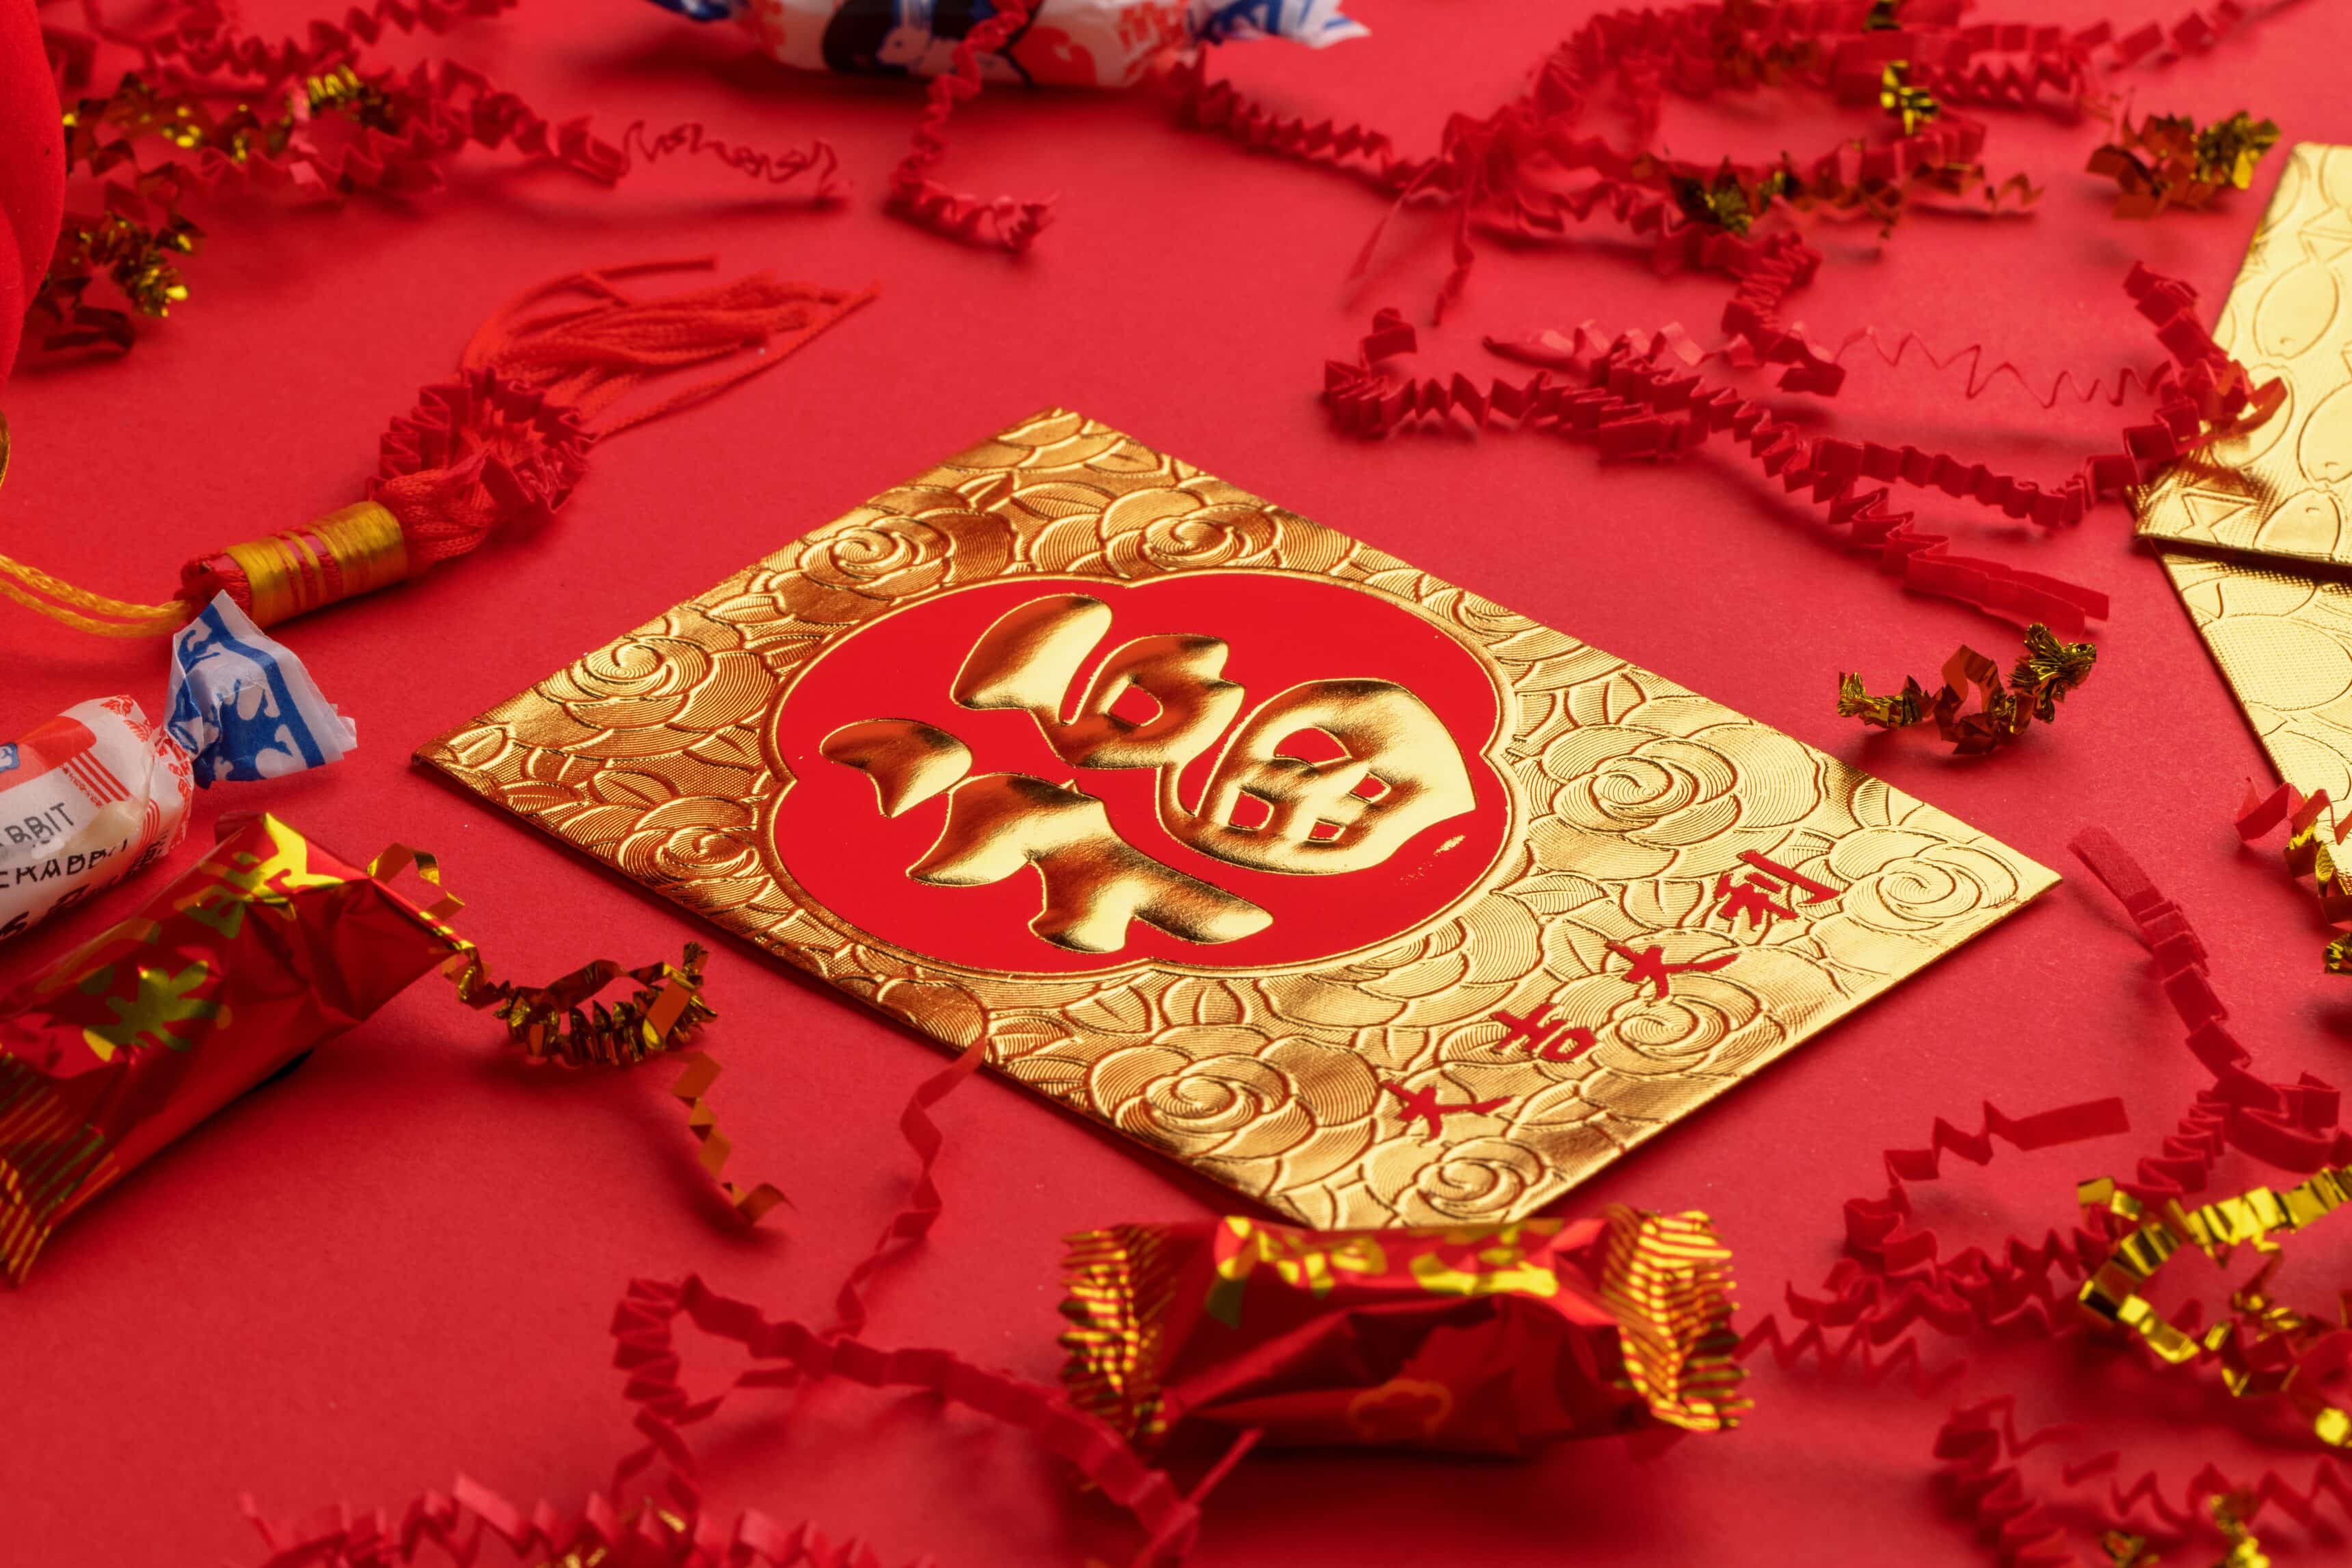 Un sobre dorado y rojo con una inscripción en chino.